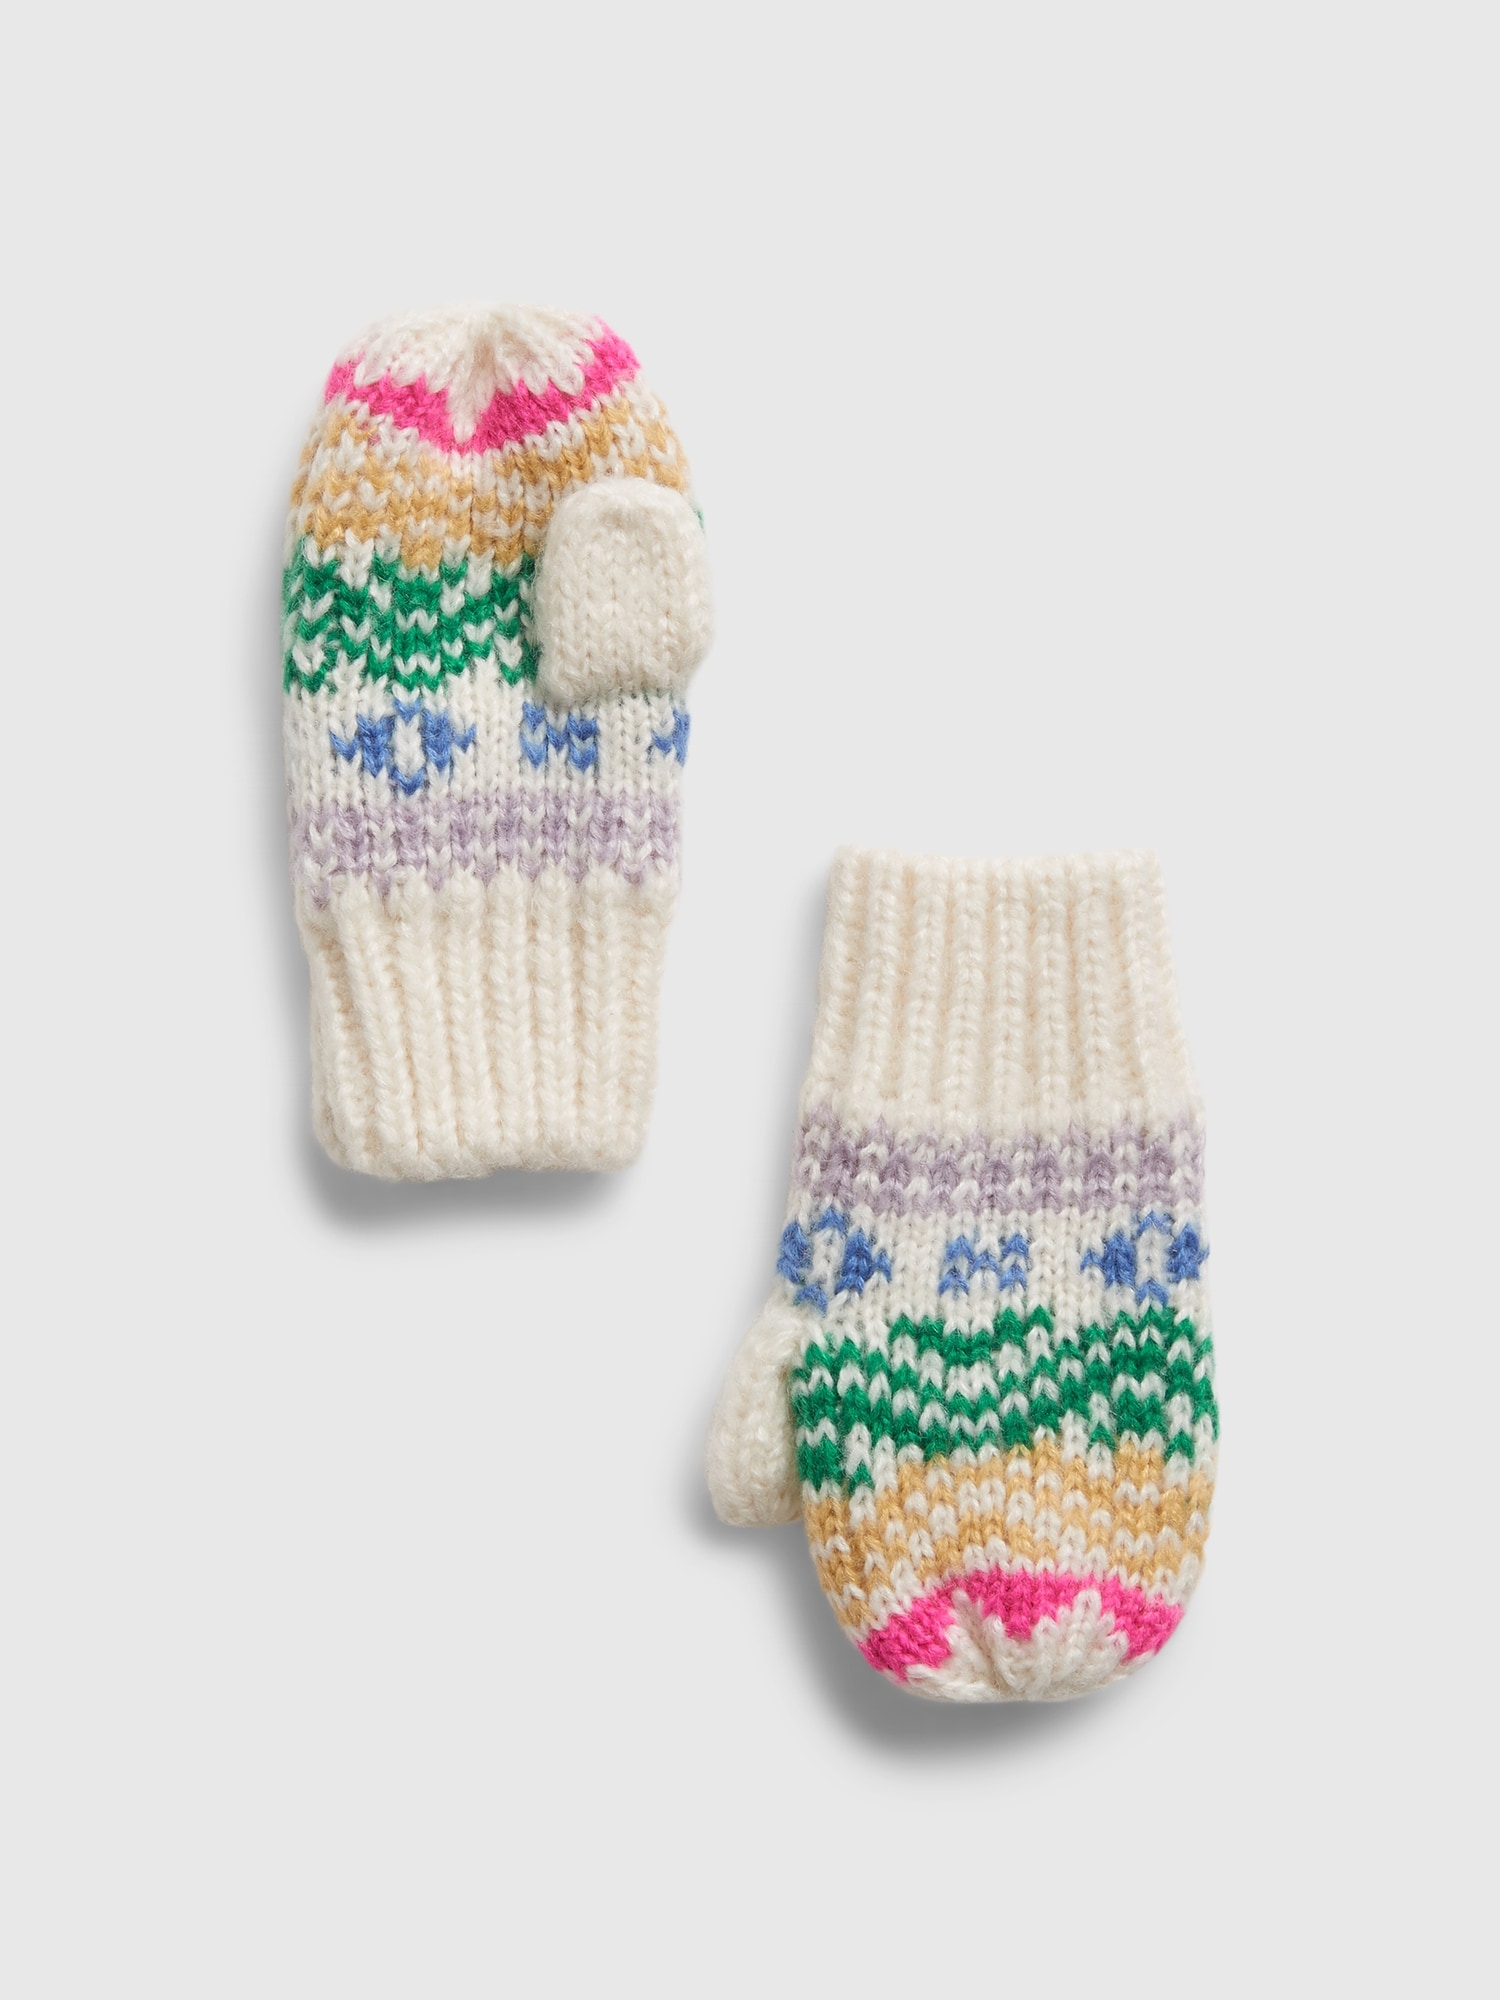 GAP Knitted Gloves for Kids - Girls